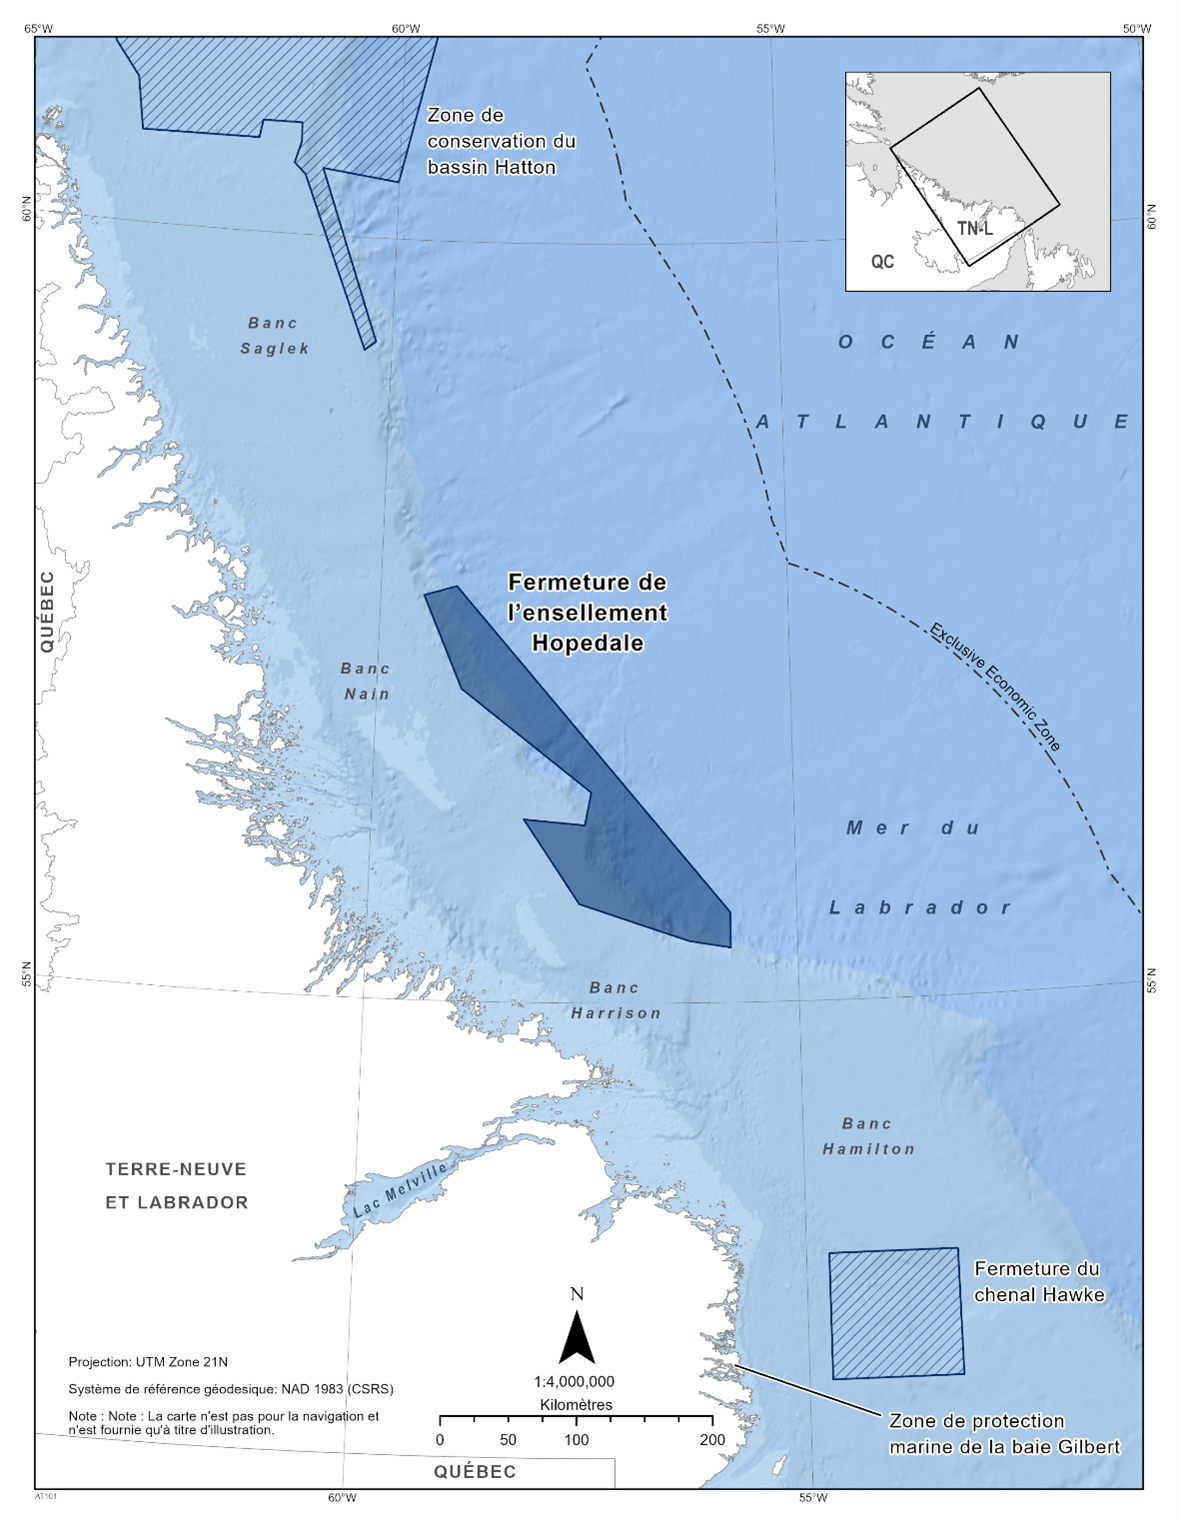 Carte de la fermeture de l’ensellement Hopedale en bleu foncé. La carte présente également d'autres refuges marins dans la région avec des lignes diagonales bleu foncé (zone de conservation du bassin Hatton & fermeture du chenal Hawke).